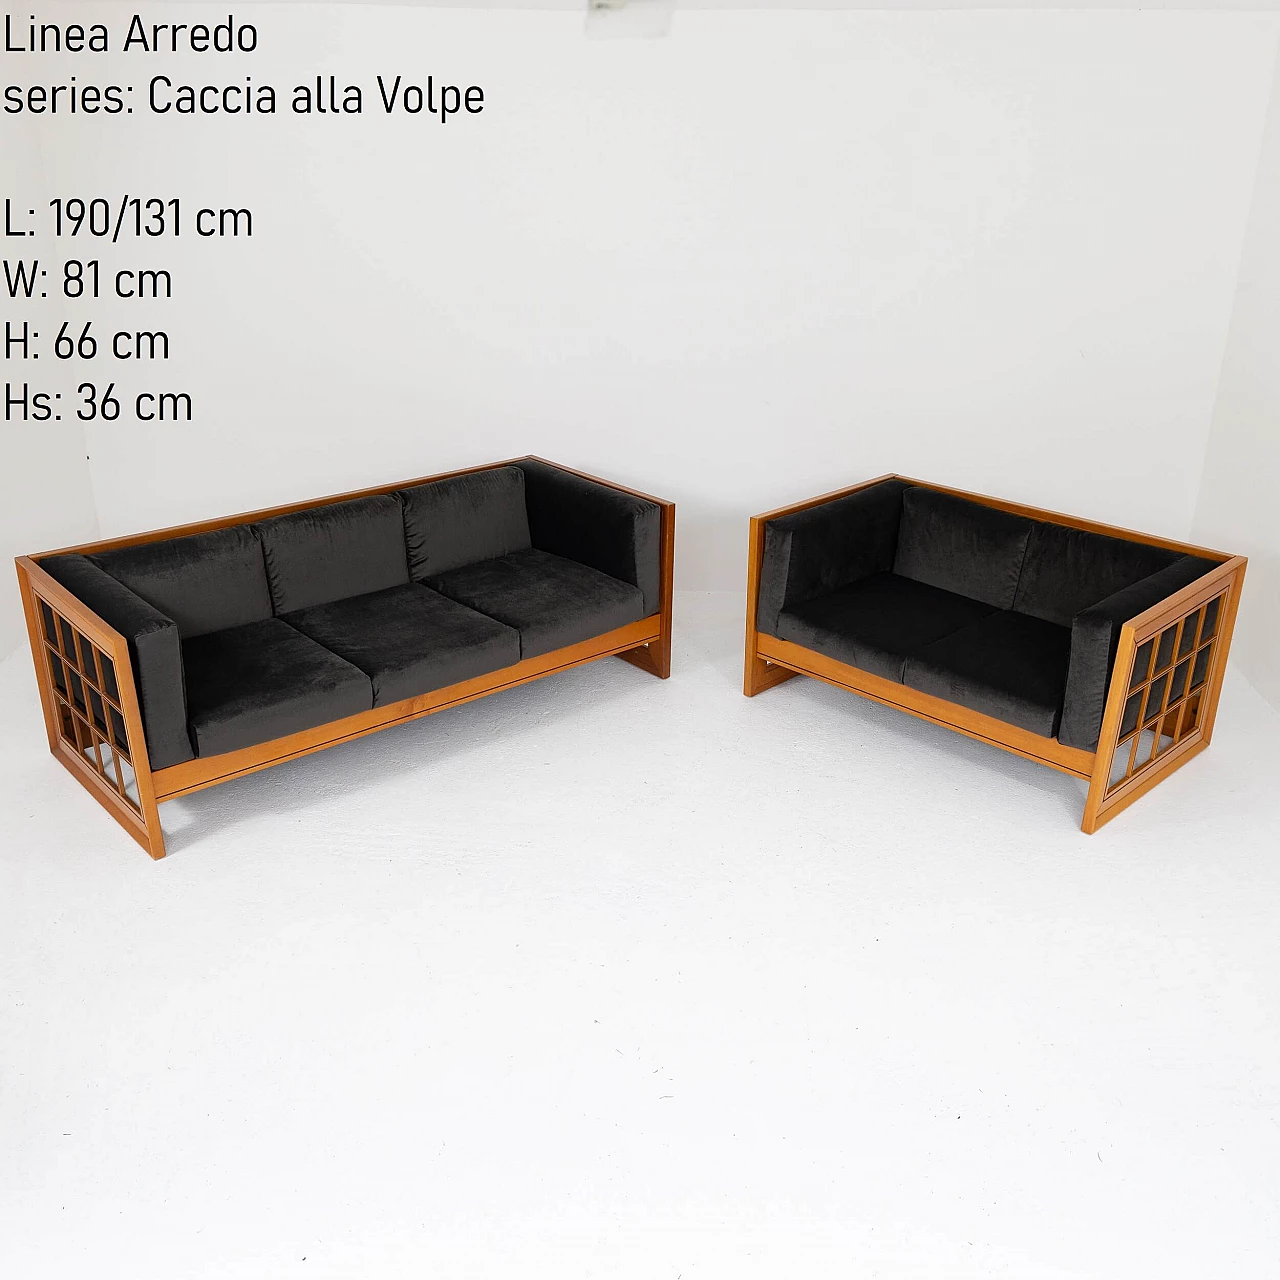 Pair of Caccia alla Volpe sofas by Linea Arredo, 1970s 6